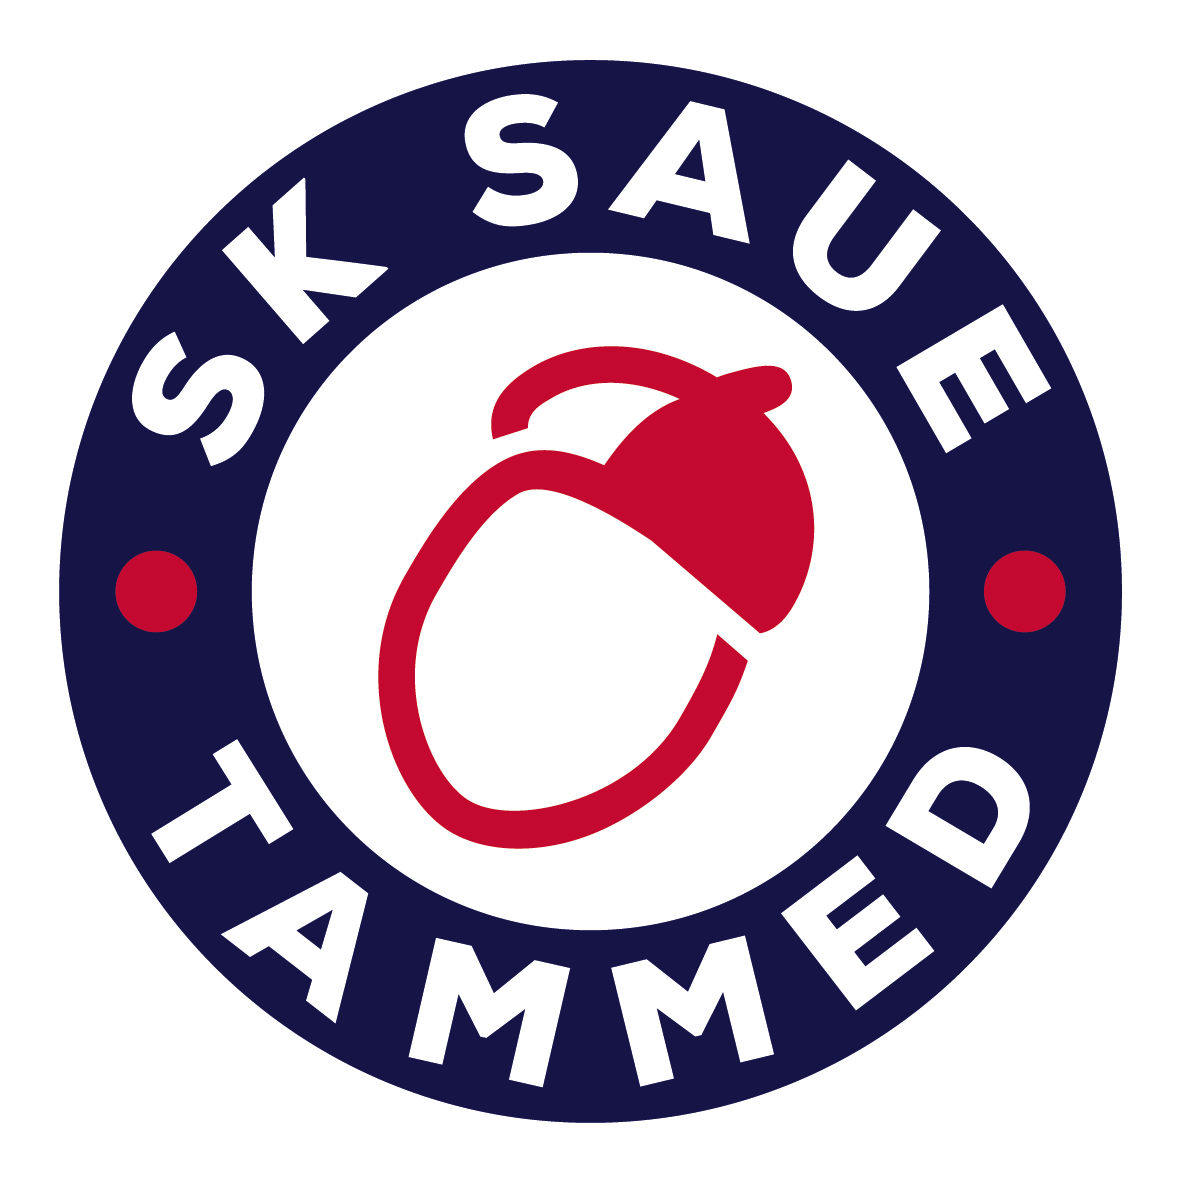 SK Saue Tammed